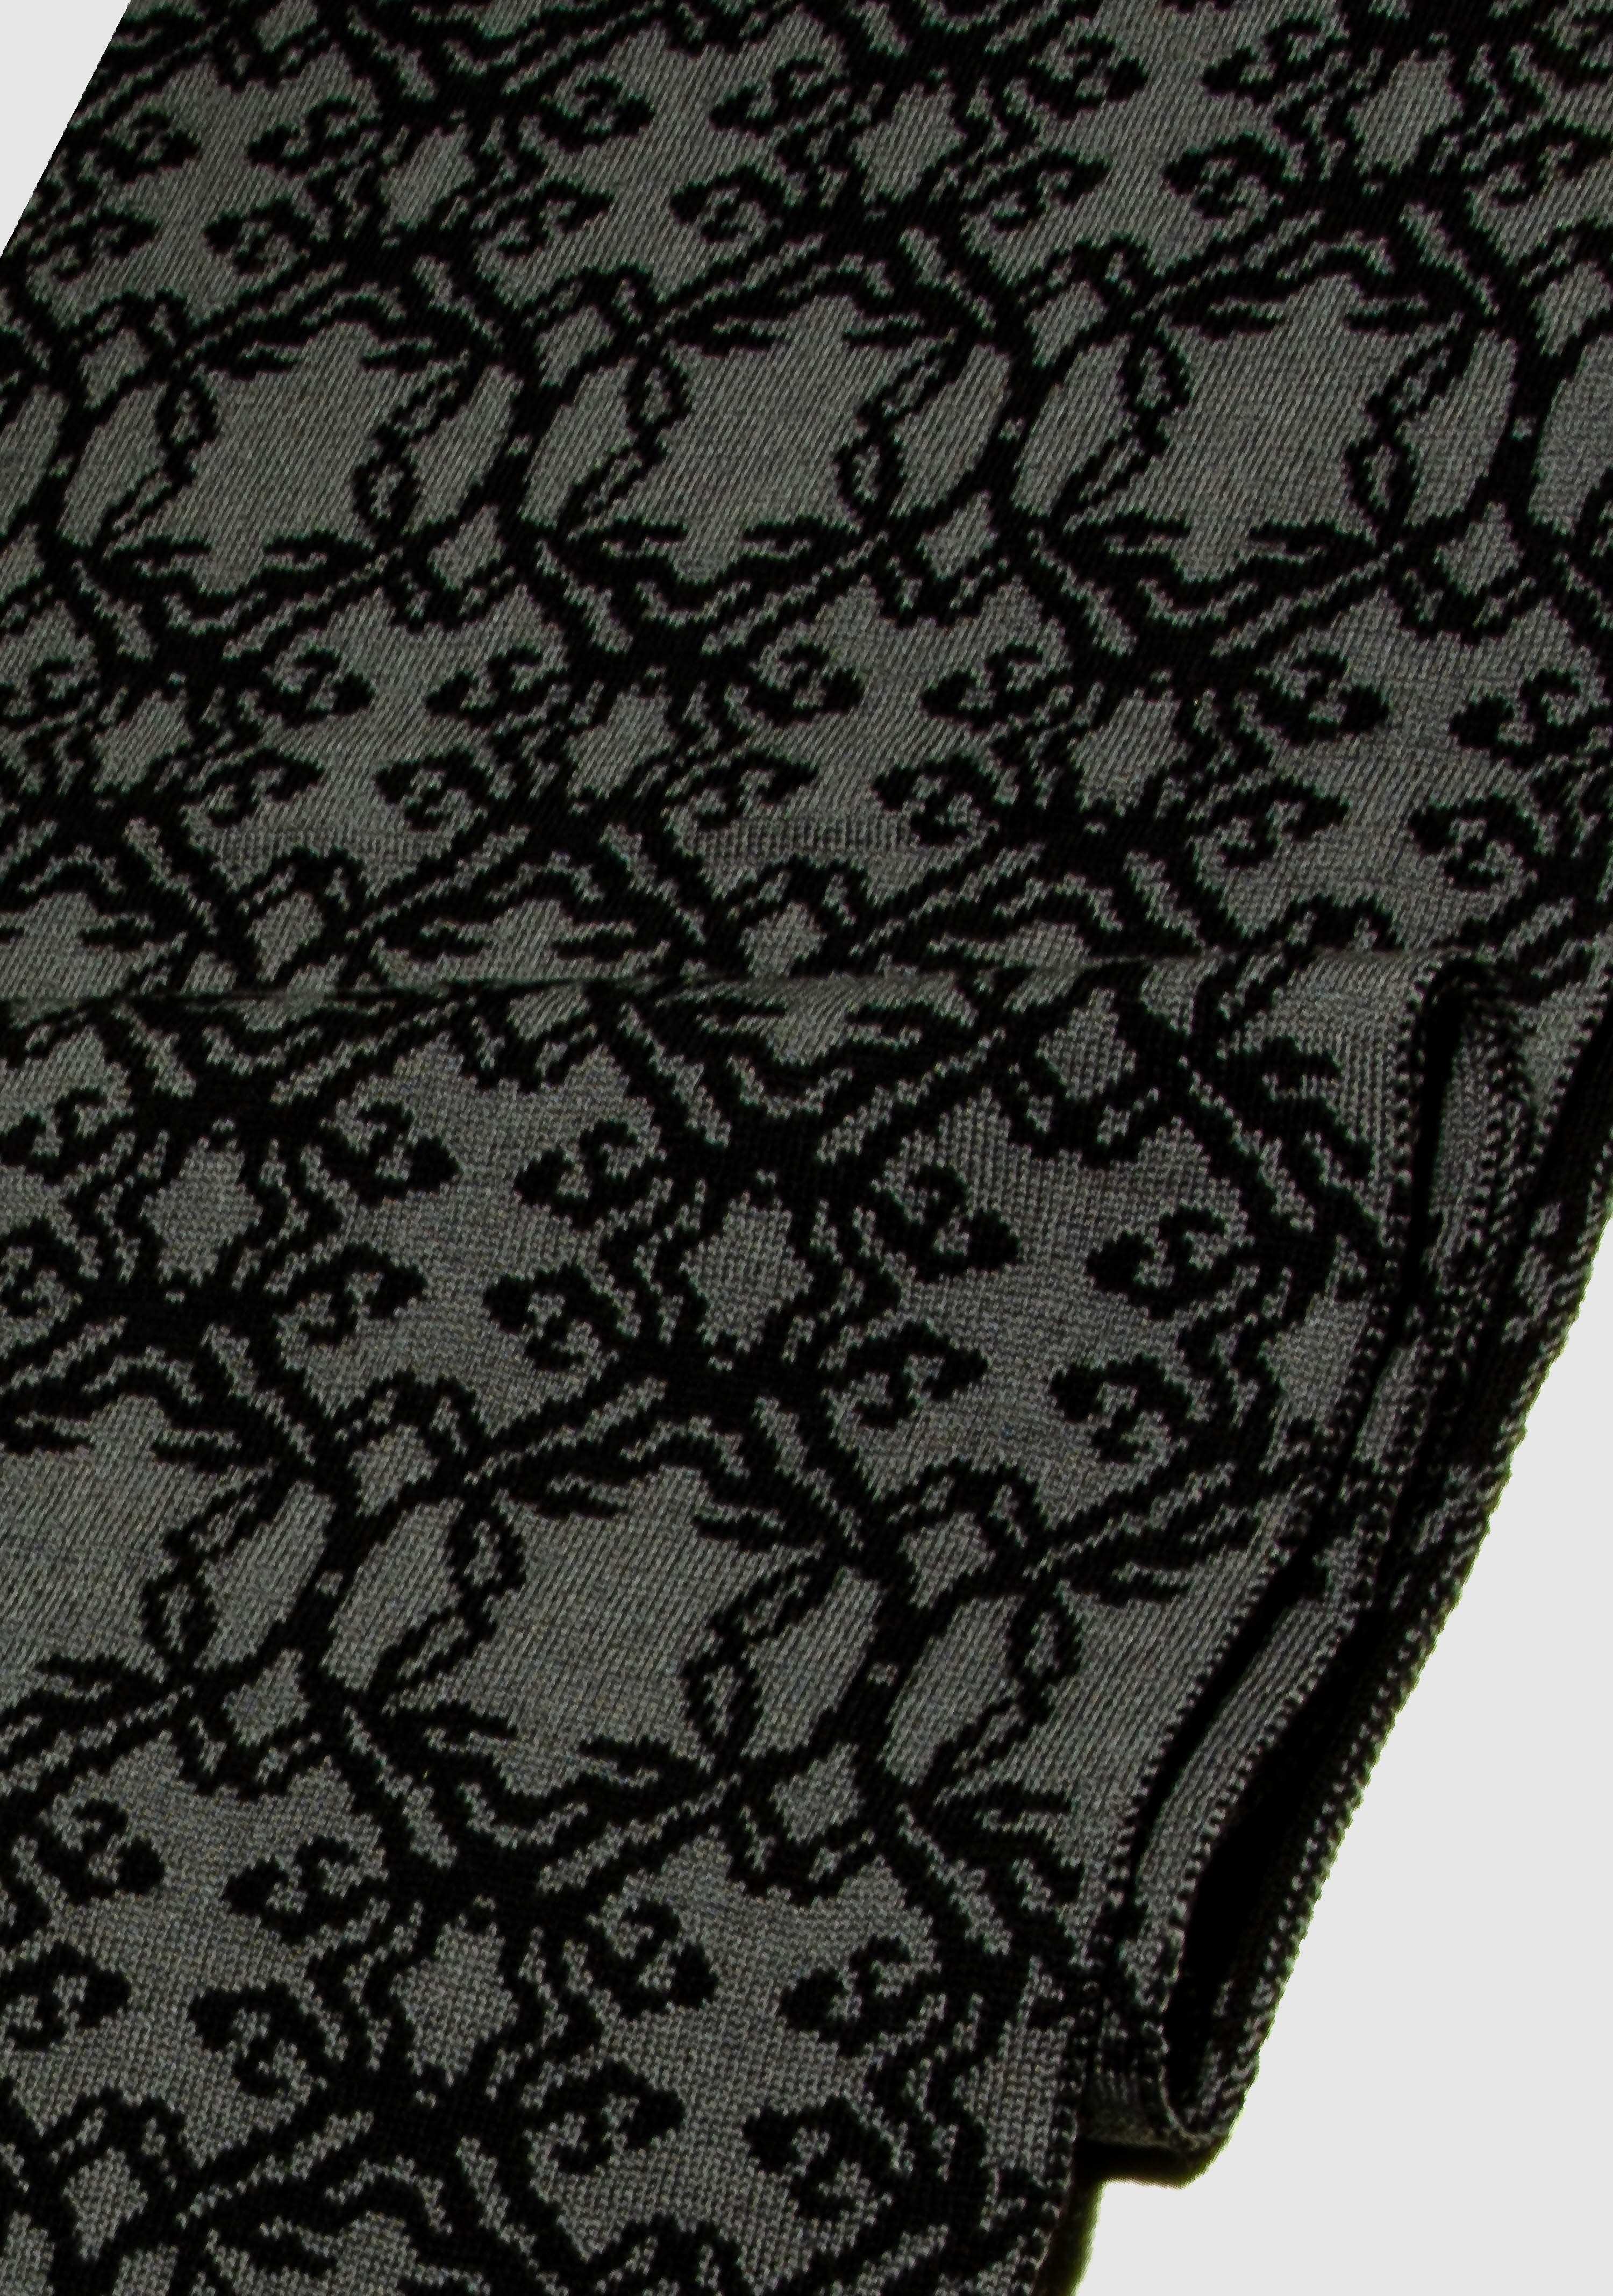 LANARTO slow fashion Strickschal Schal Kranz aus 100% Merino extrasoft in schönen Farben schwarz_graphit